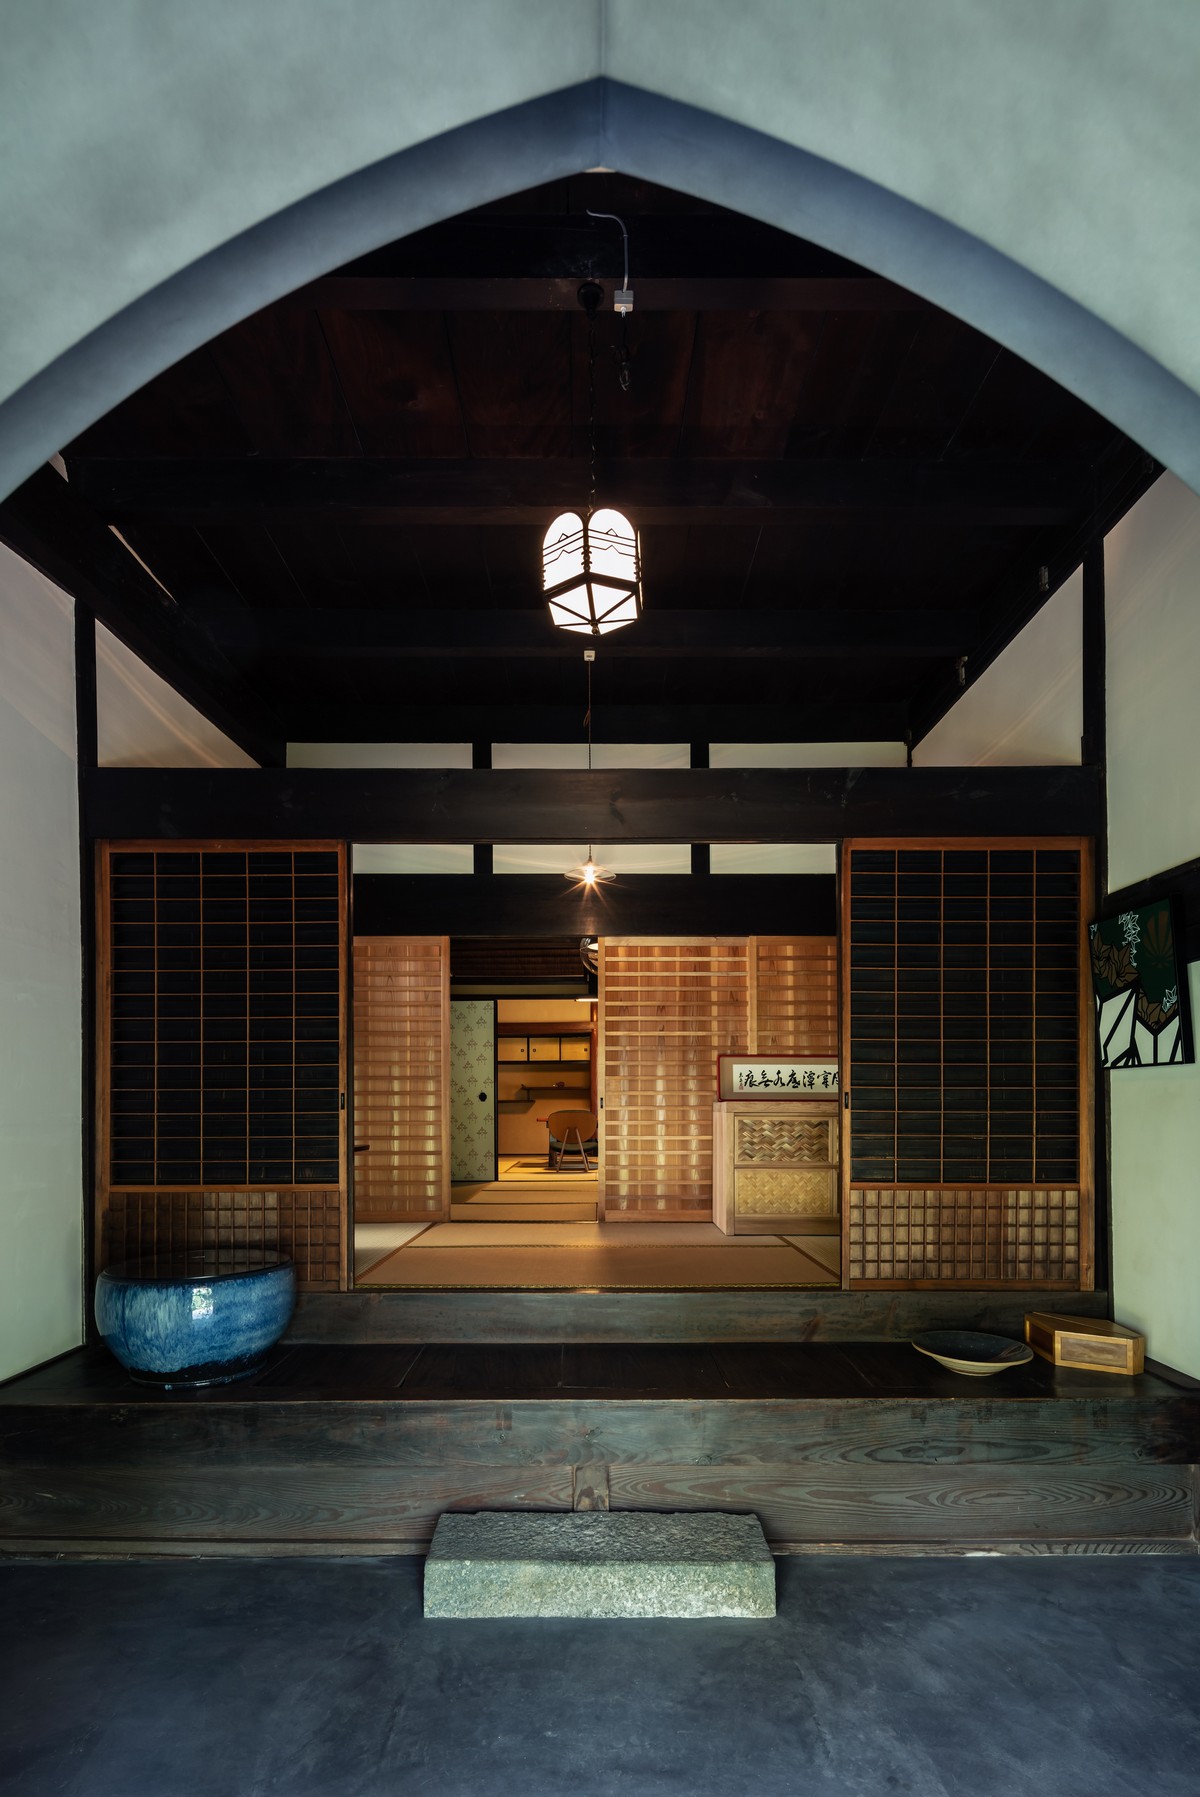 Уникальный дом с многовековой историей в Японии материалов, качестве, поколения, материалы, семьи, строительных, использованы, бережно, балки, часть, Уникальный, проект, центре, реконструкции, поколение, традиционная, японская, решено, затем, комната